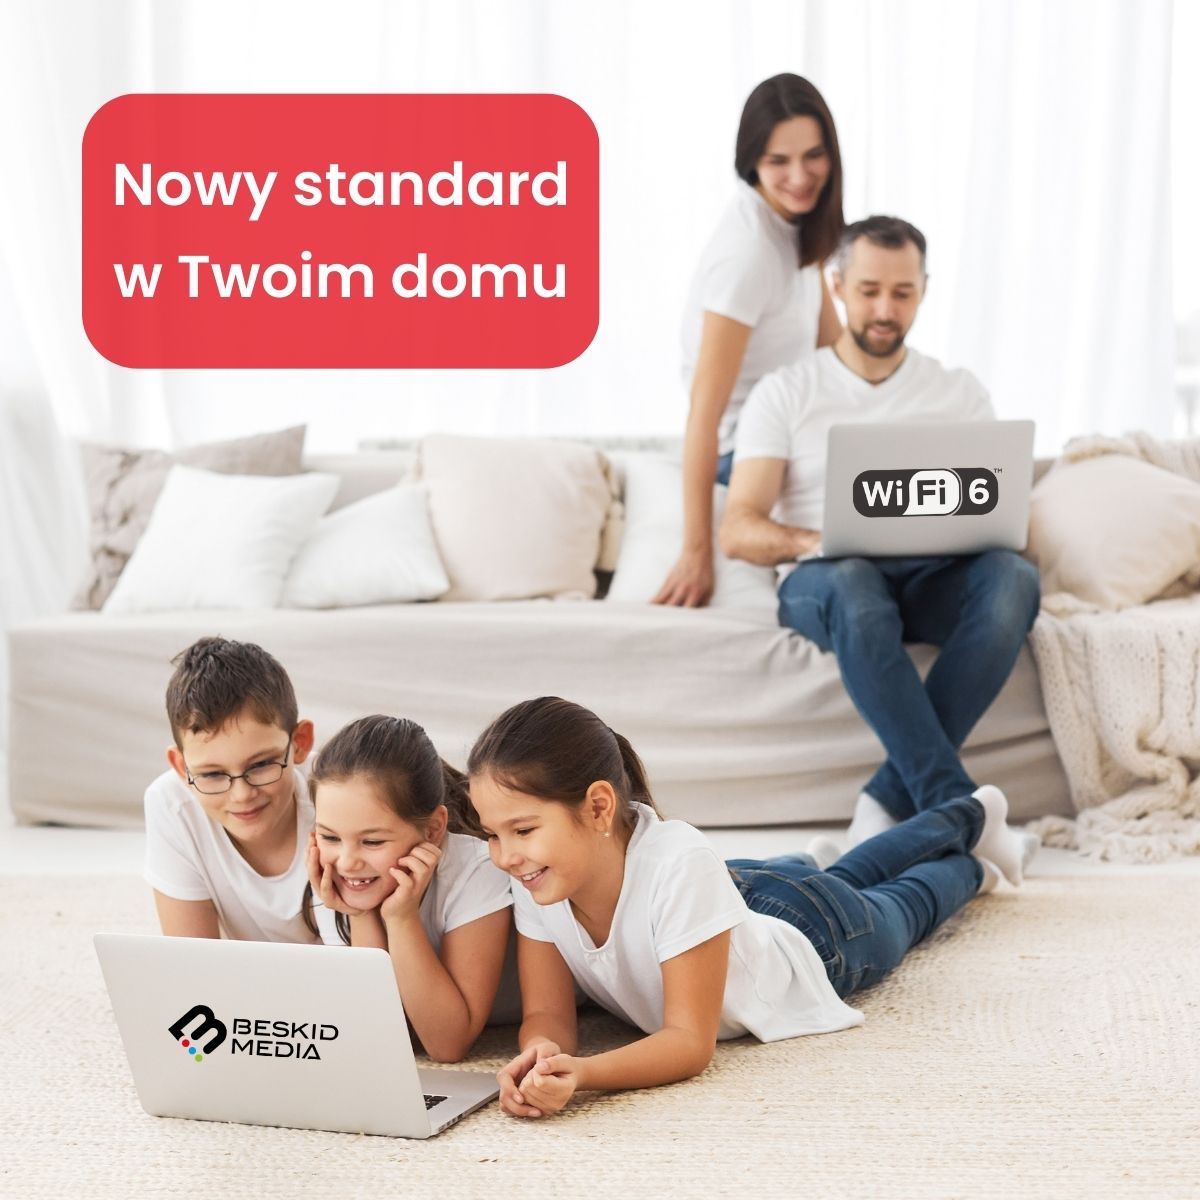 WiFi 6 nowy-standard-w-twoim-domu Beskid Media Info Oswiecim Info Malopolska Info Slask